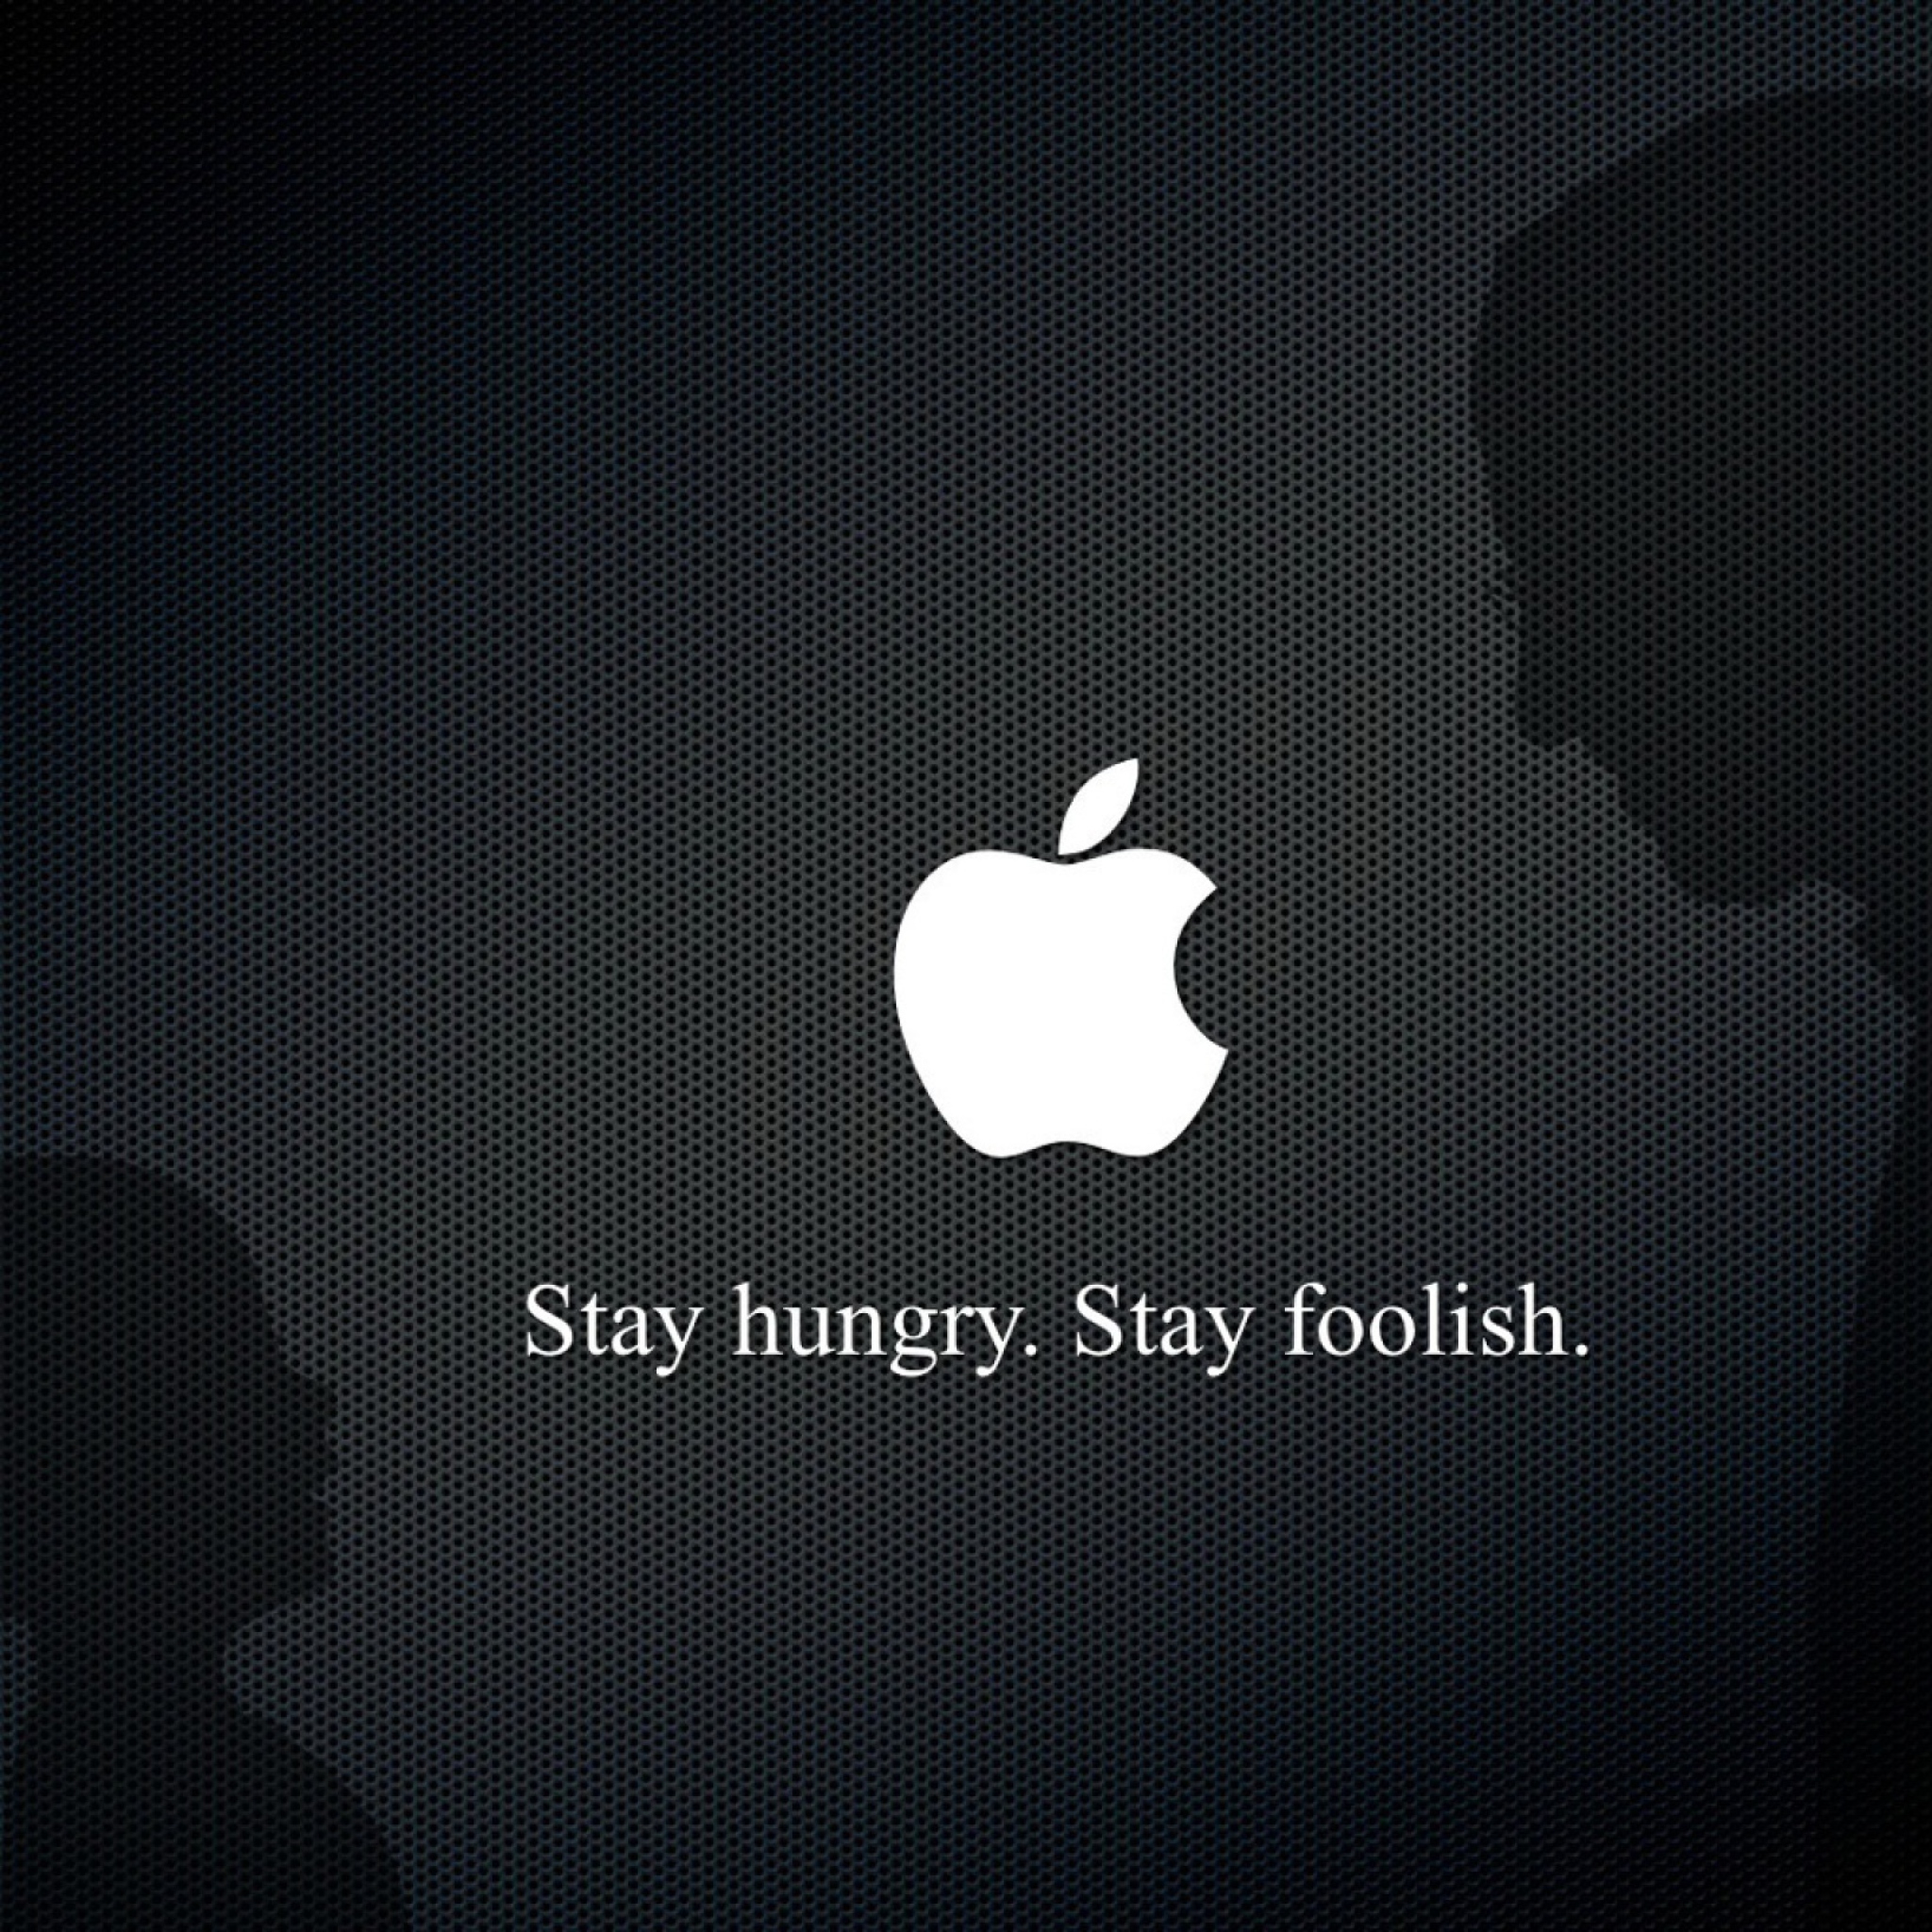 Stay hungry stay foolish. Обои Apple. Картинки Apple на рабочий стол. Стив Джобс обои.